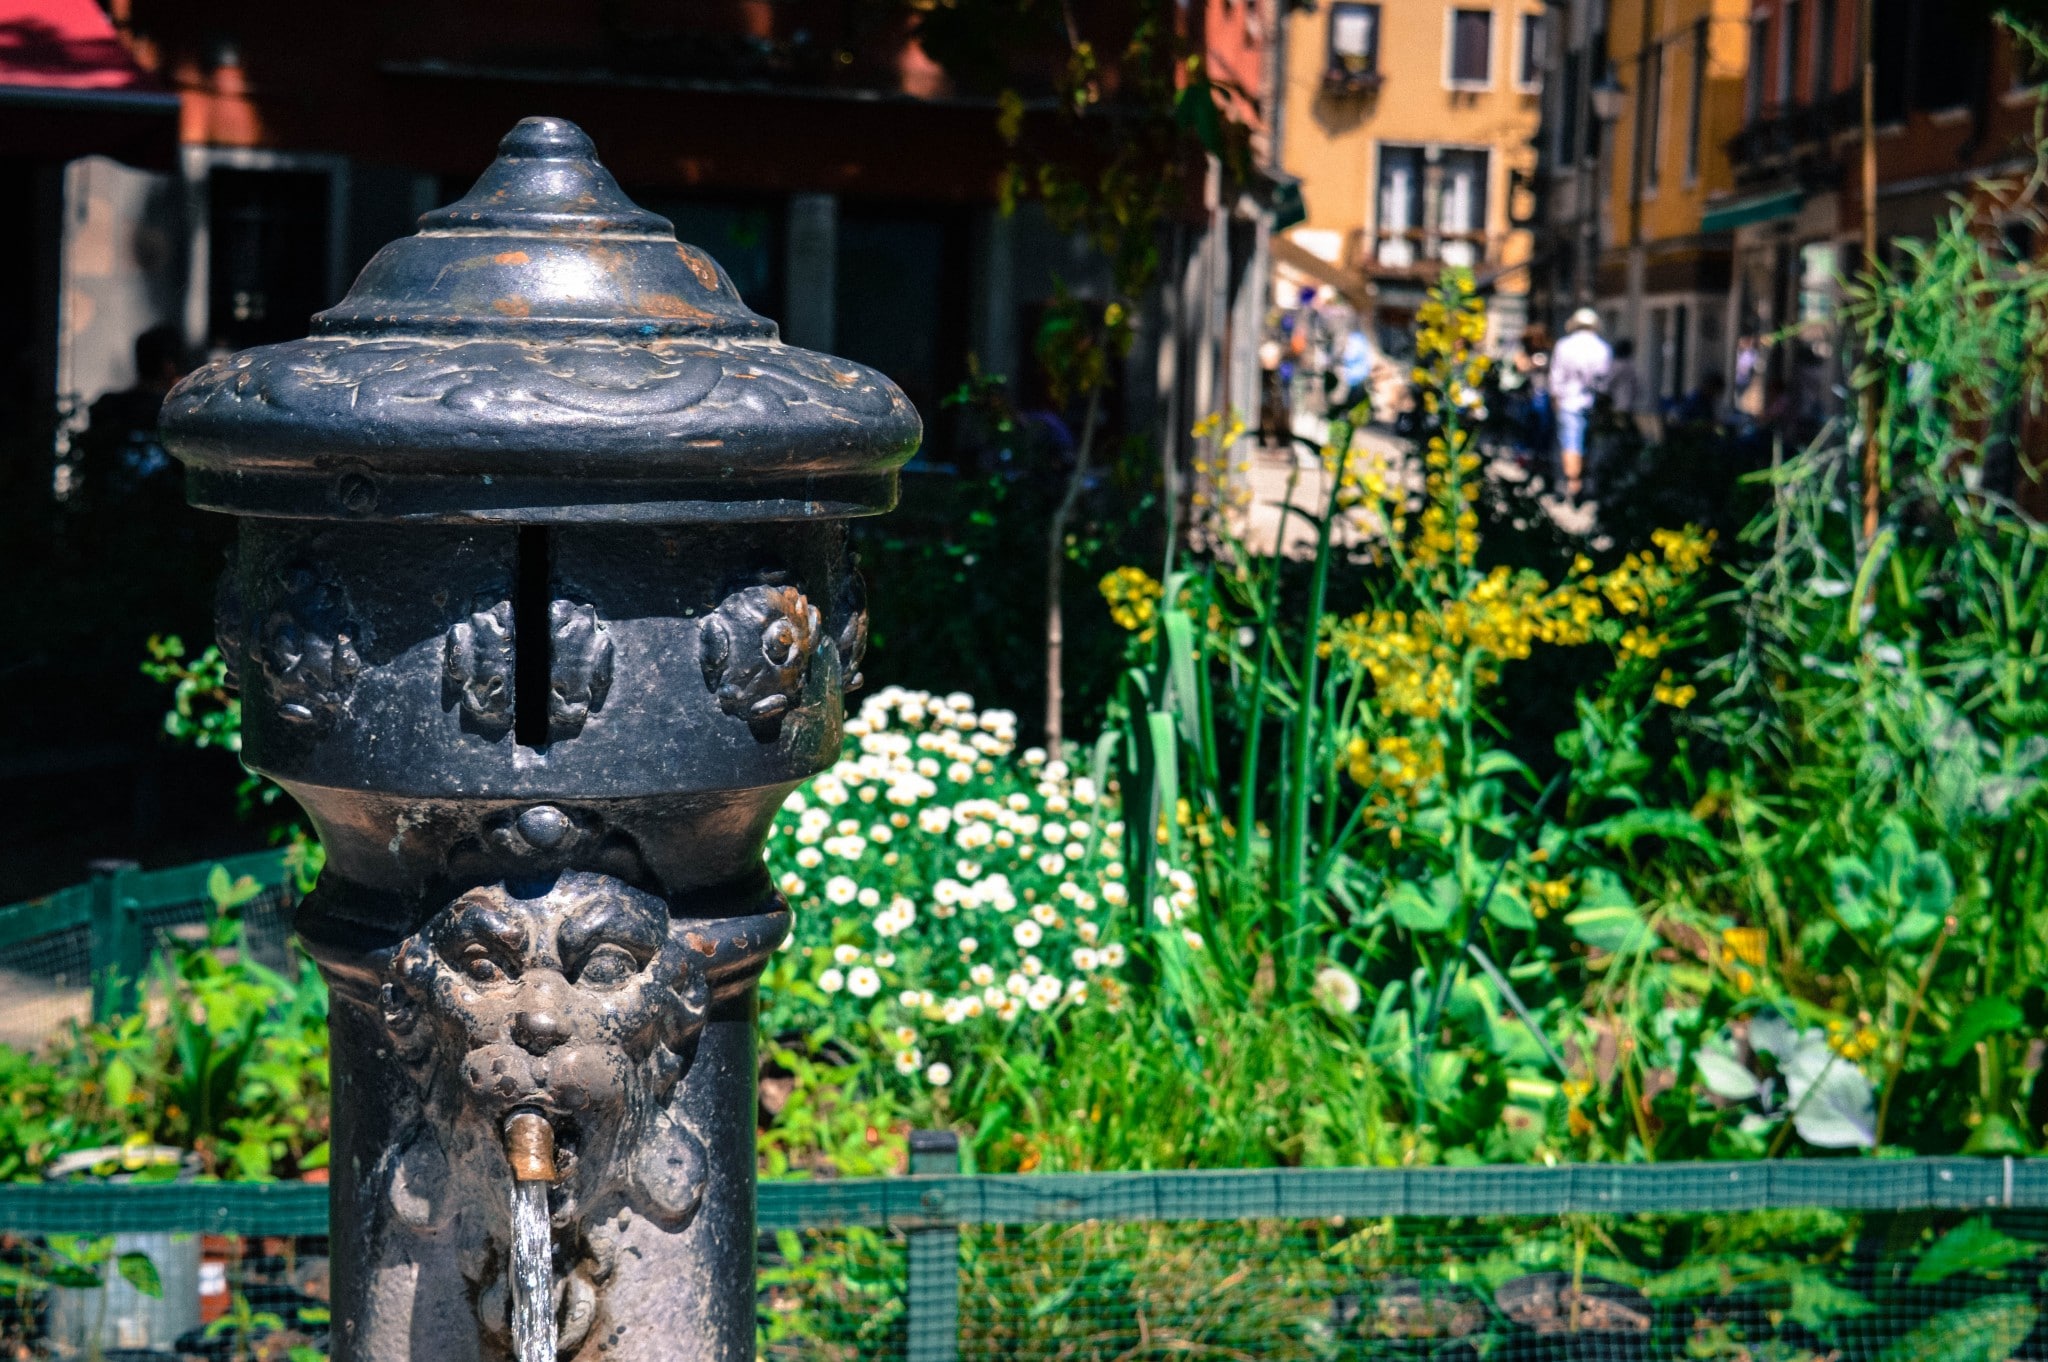 l'acqua è gratuita e potabile dalle fontane - Italy travel tips